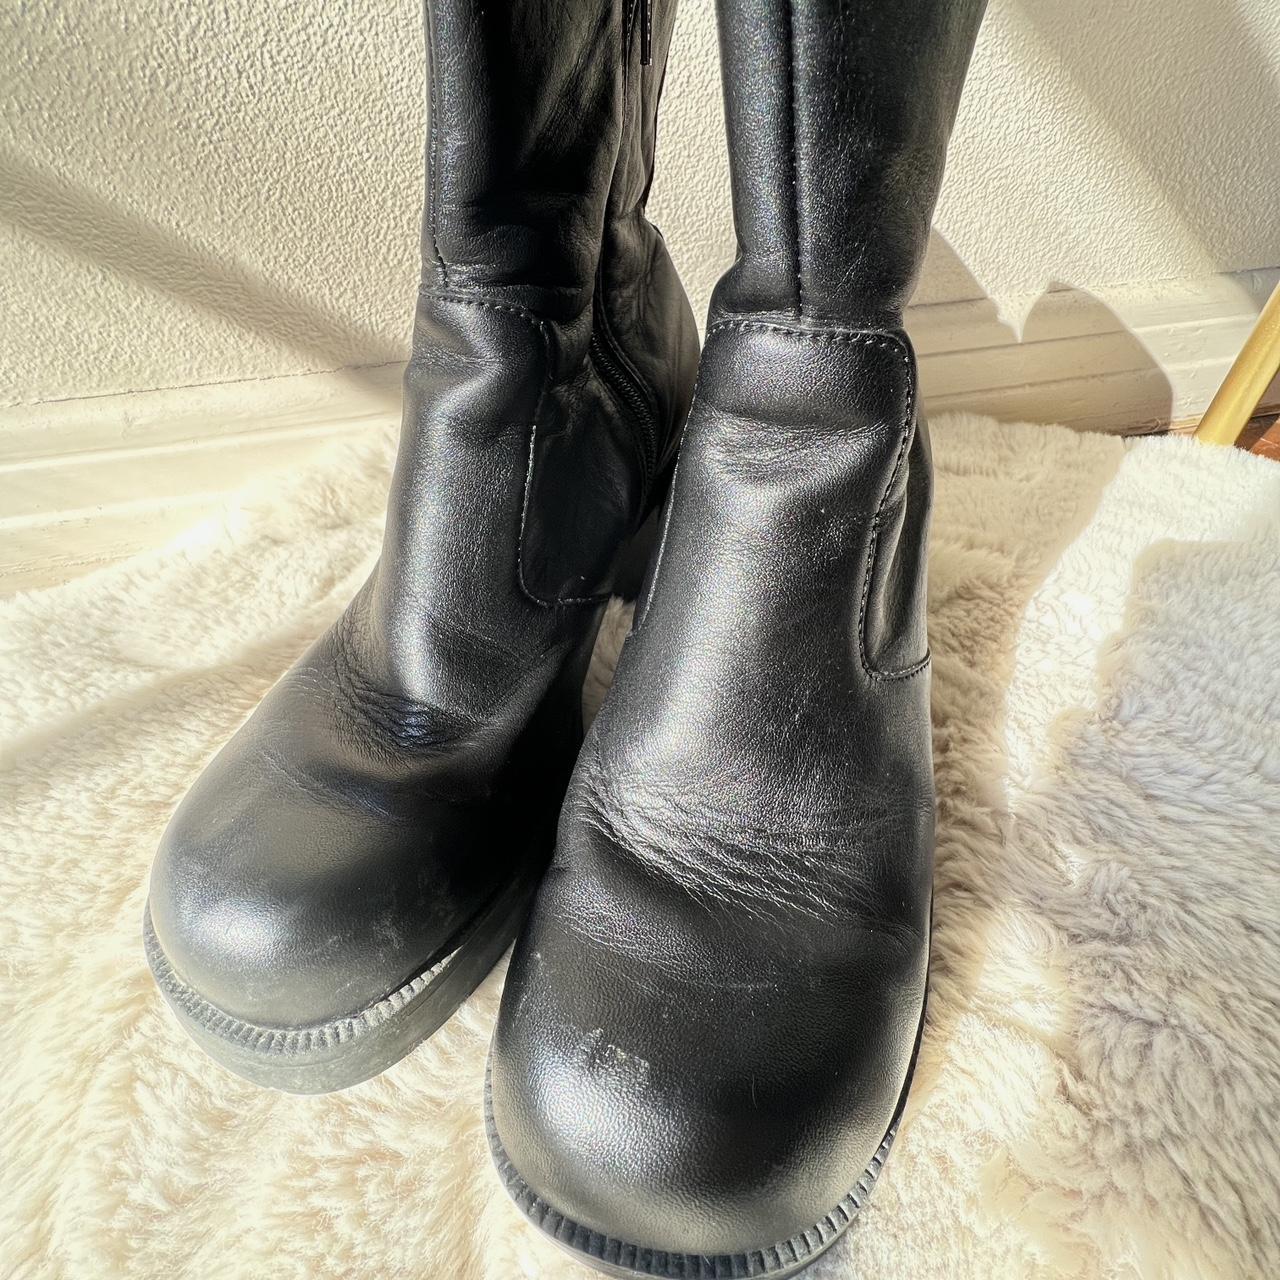 Vintage American Eagle black platform boots. 3 inch... - Depop